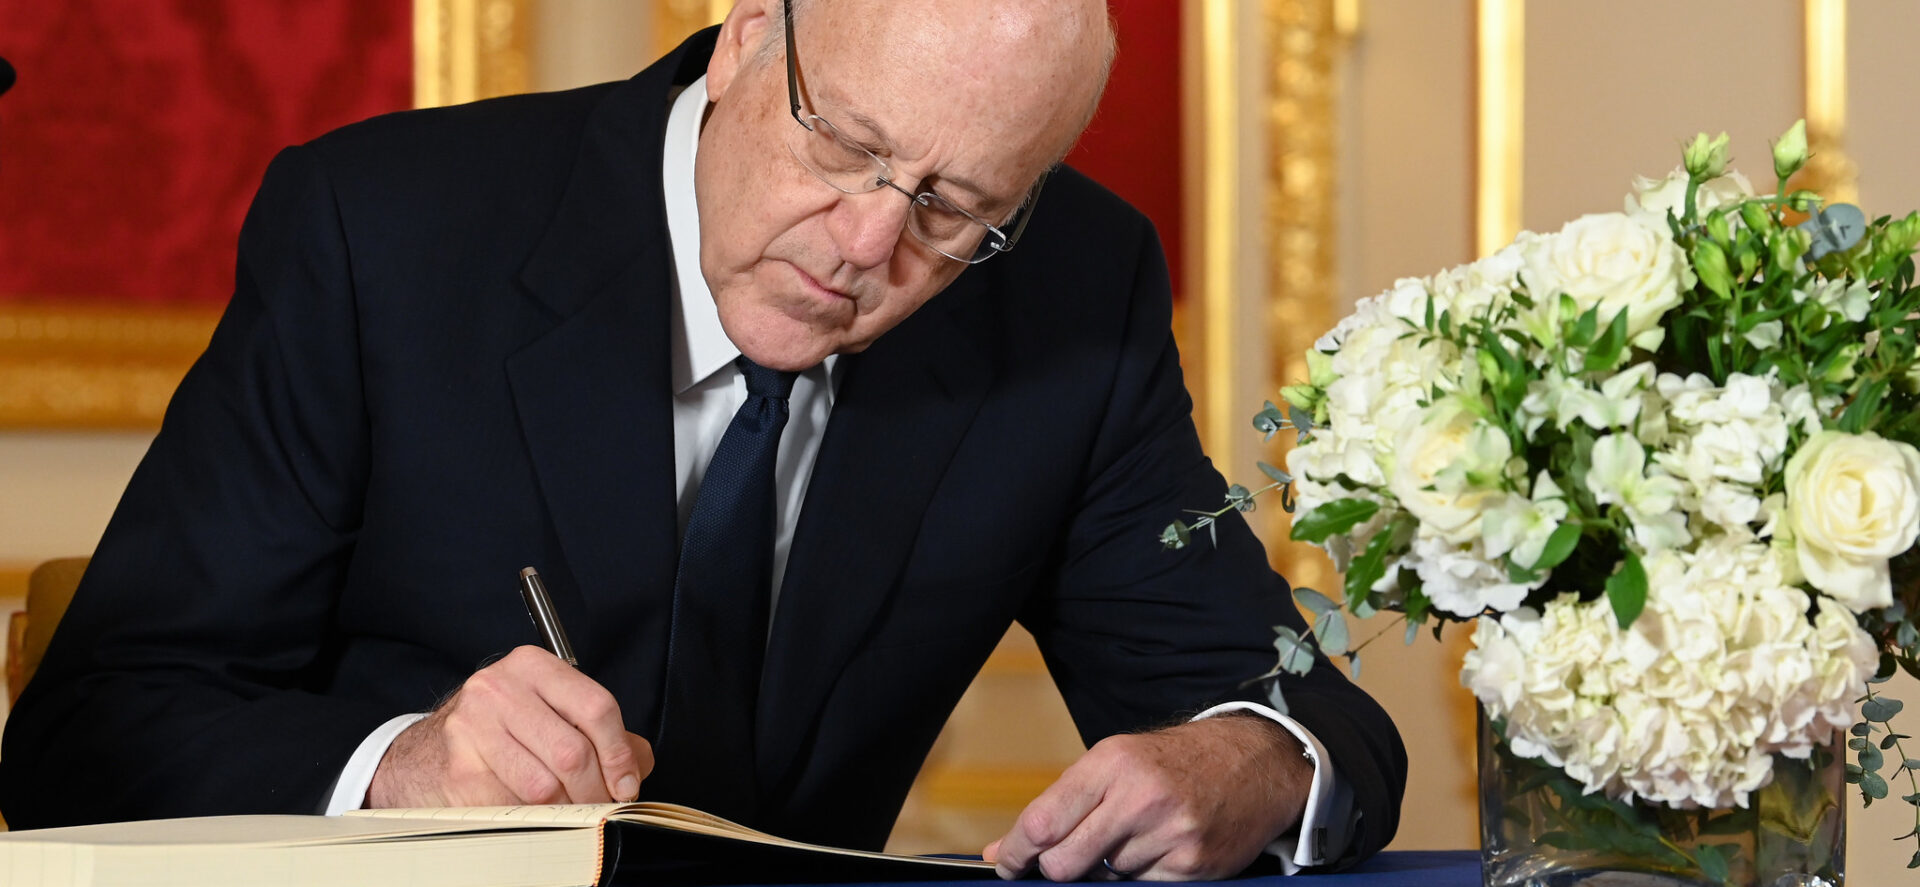 En l'absence de président, les prérogatives du Premier ministre libanais Najib Mikati sont limitées | © Foreign, Commonwealth and Development Office/Flickr/CC BY 2.0